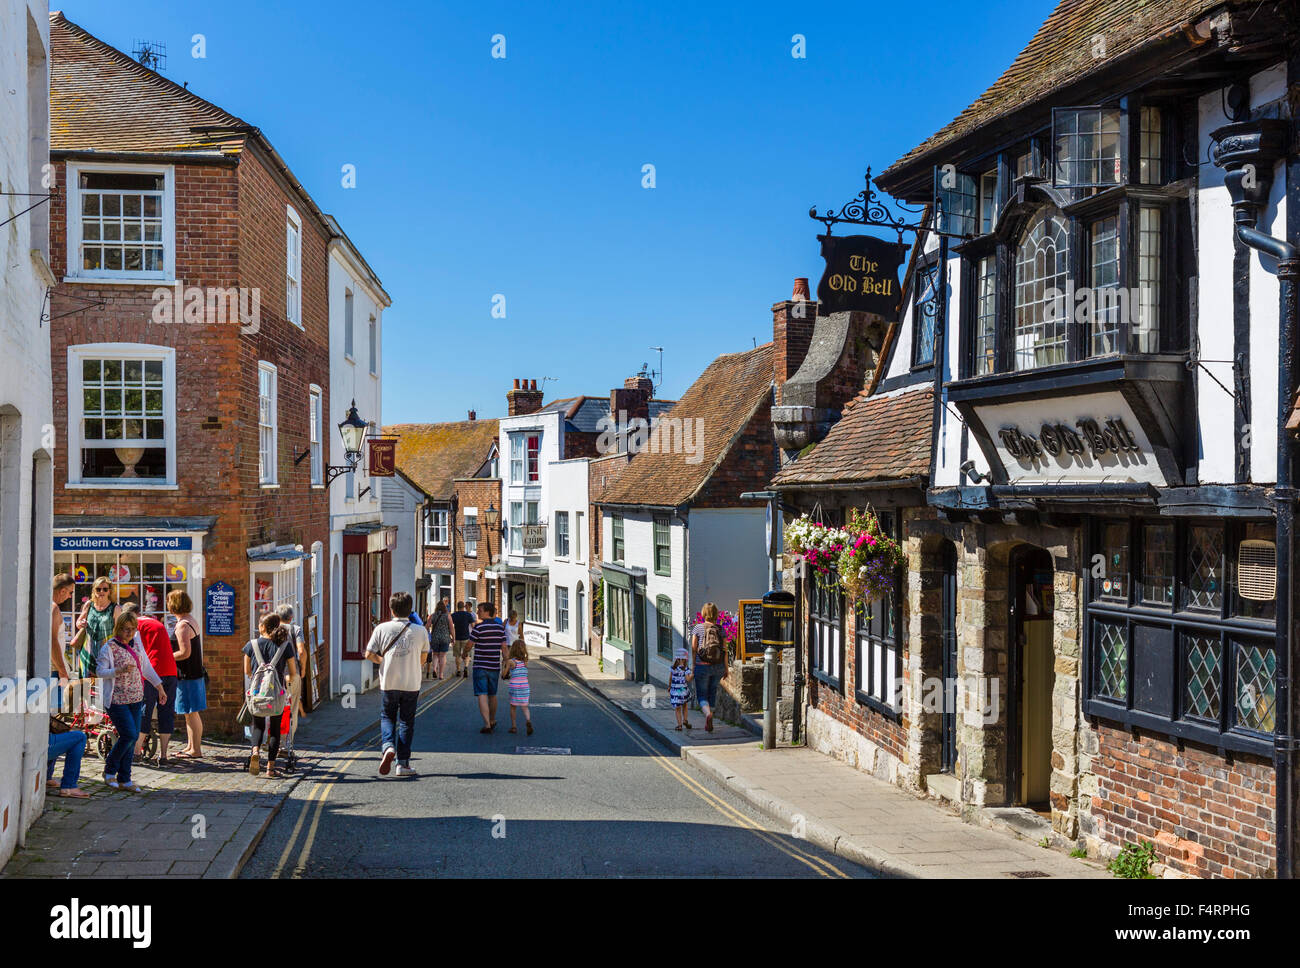 High Street mit der alten Glocke Pub auf der rechten Seite, Roggen, East Sussex, England, UK Stockfoto